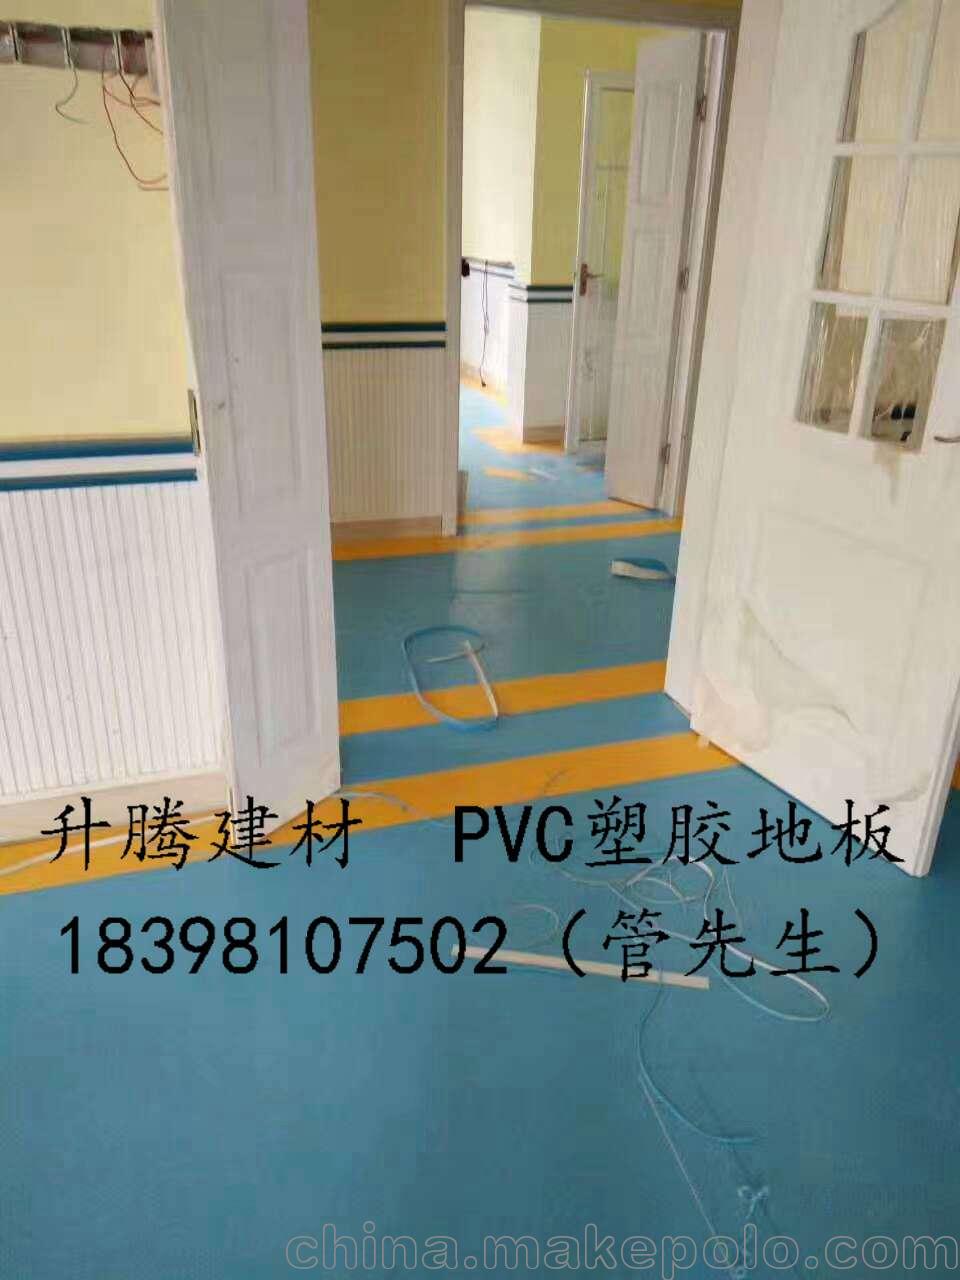 大英学校pvc塑胶地板橡胶地板橡胶地板抗菌安装